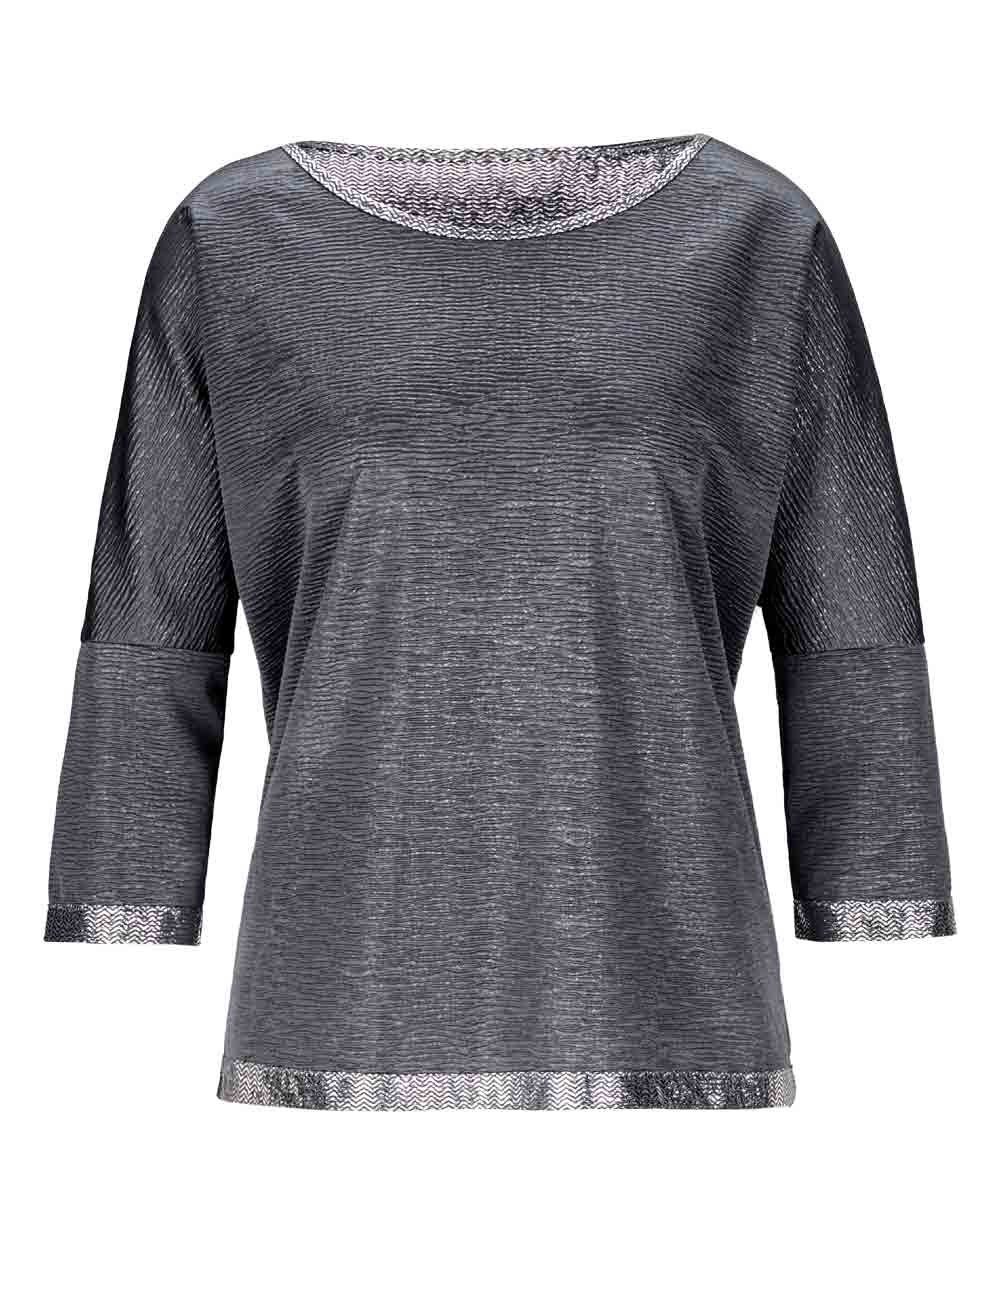 [Jetzt im Angebot! Nicht verpassen] creation L grau-silberfarben Damen Rundhalsshirt CRéATION Shirt, L